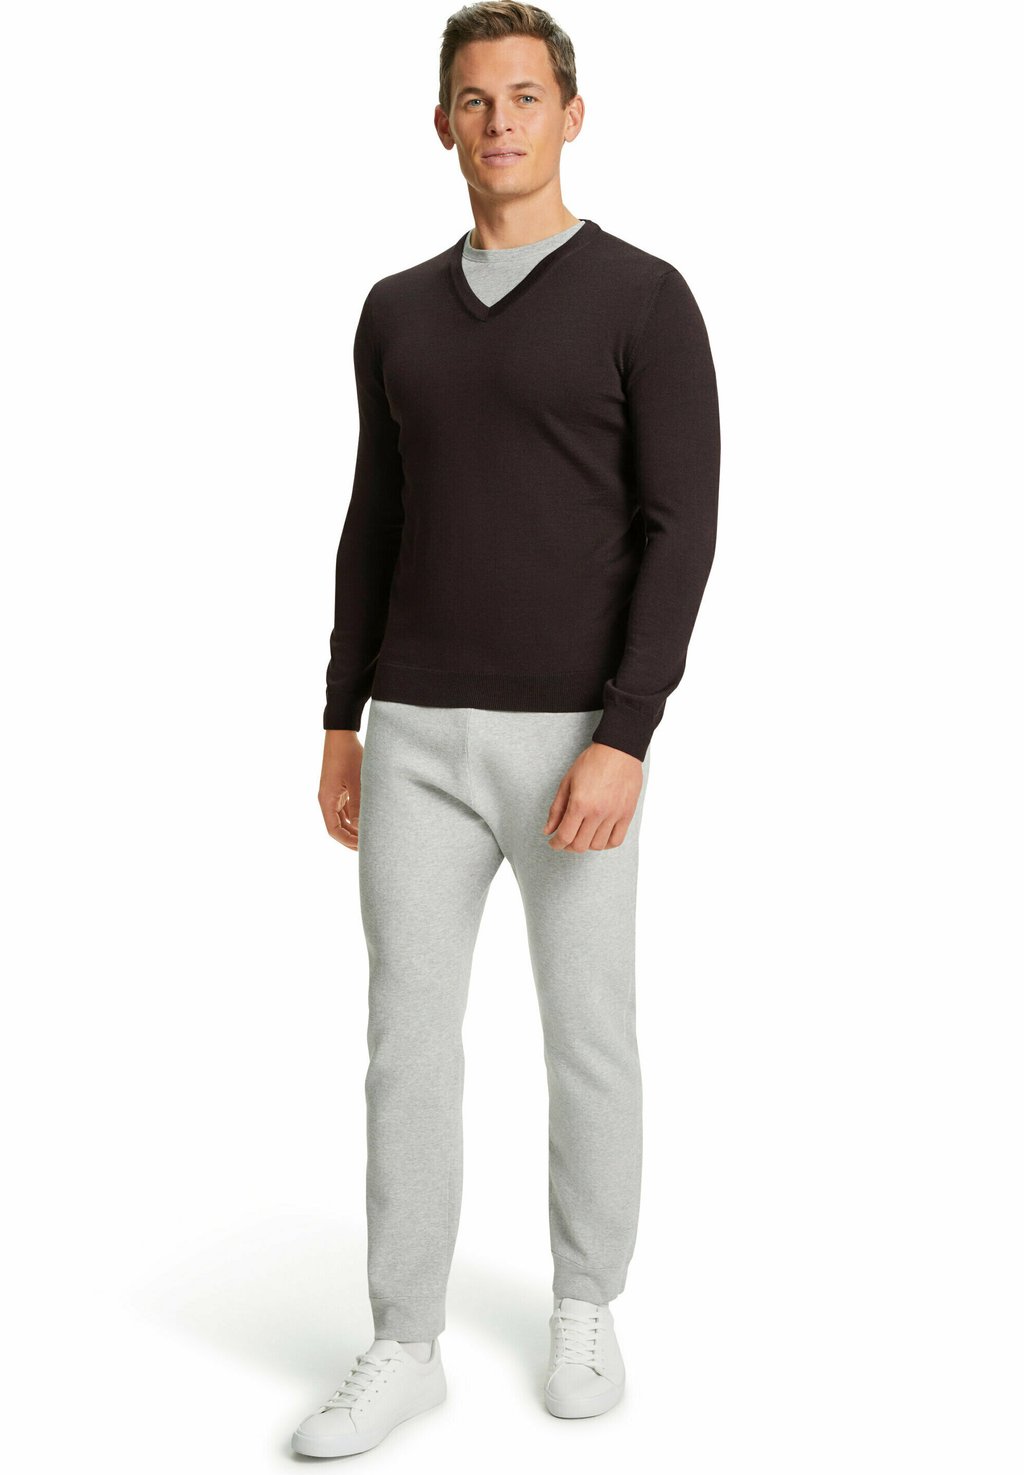 Вязаный свитер Basic New Merino Merino Wool с V-образным вырезом FALKE, цвет brown mel цена и фото